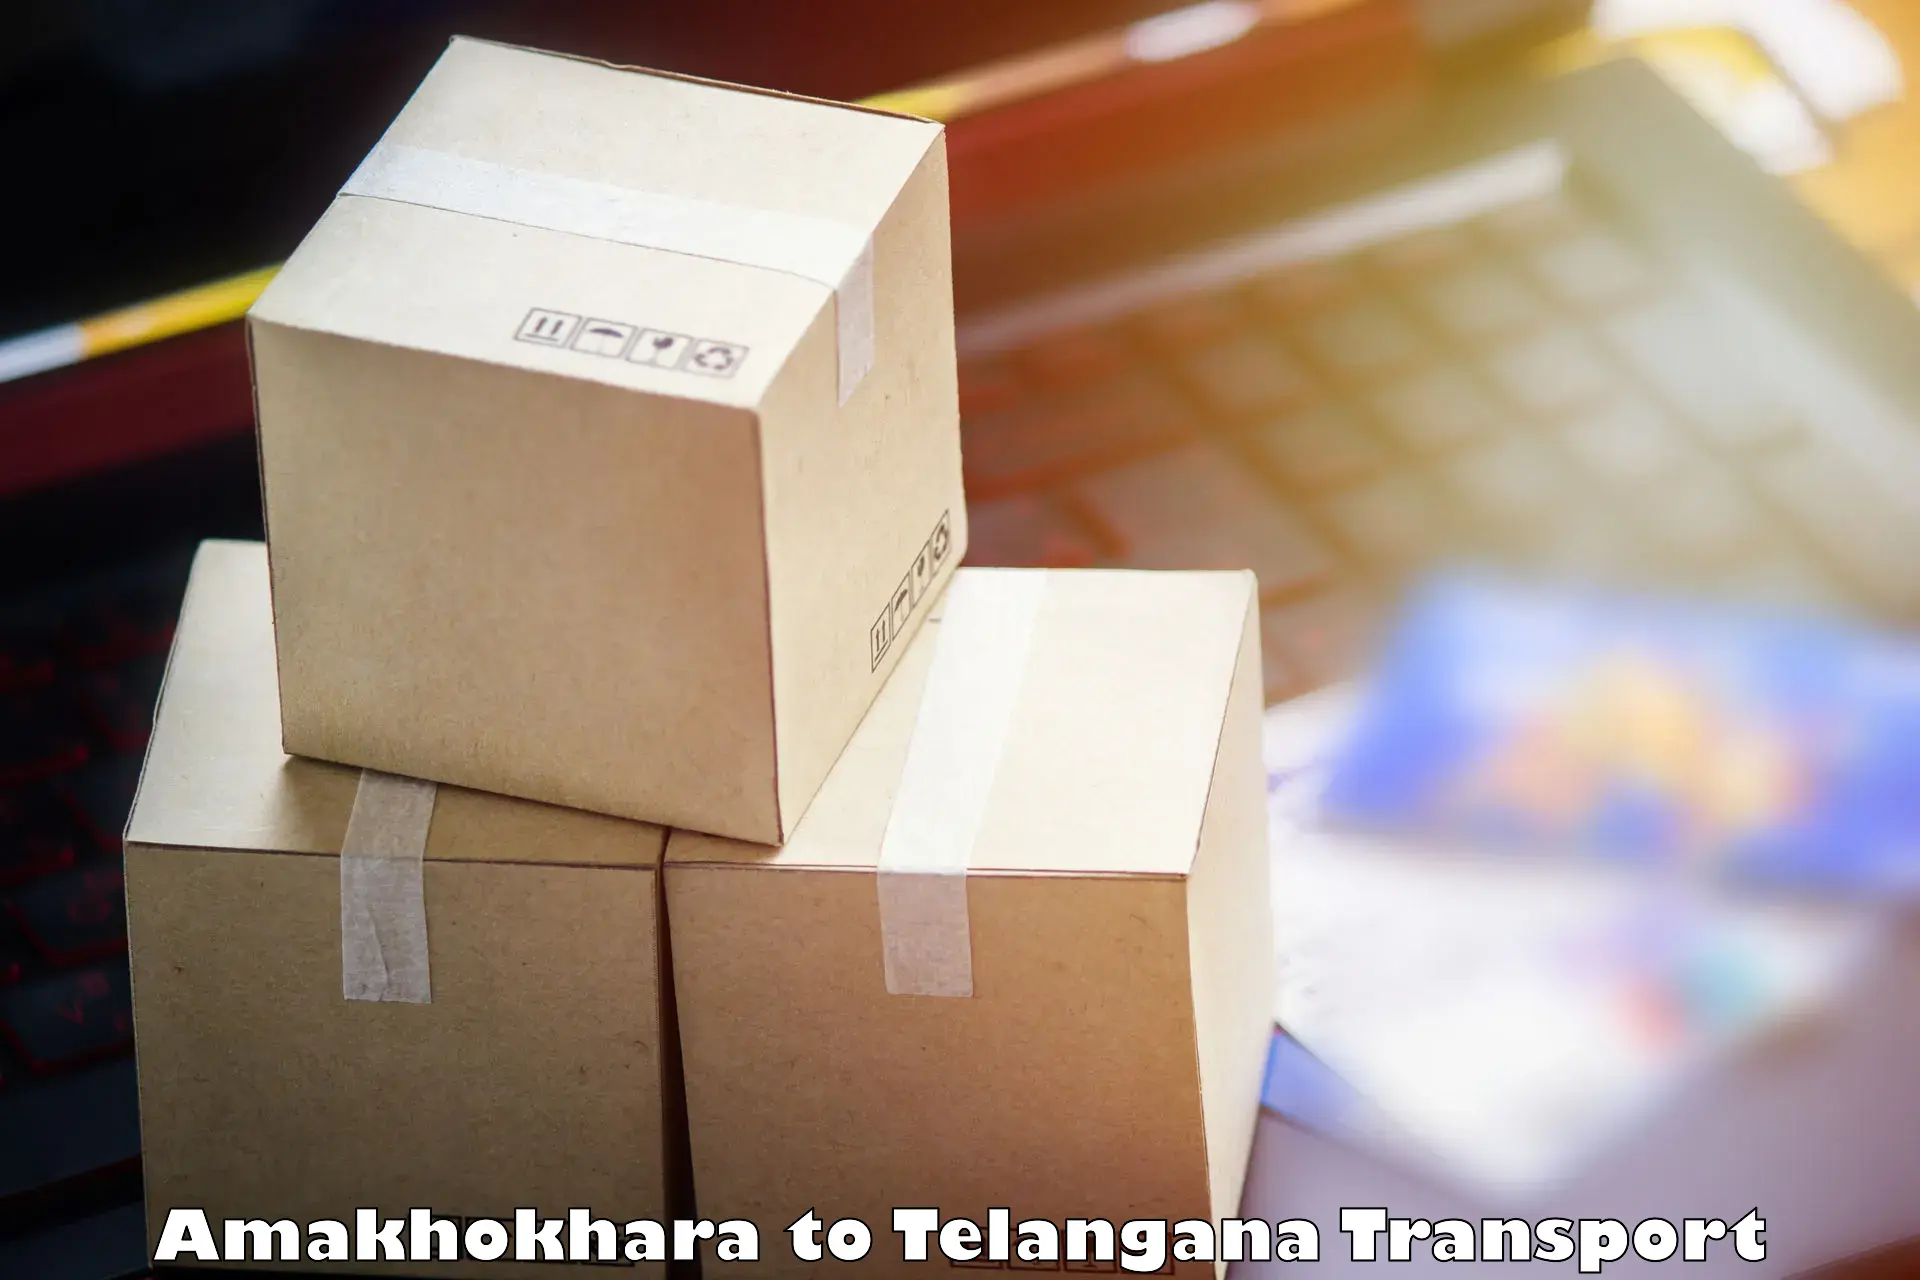 Road transport online services Amakhokhara to Kakeshwaram